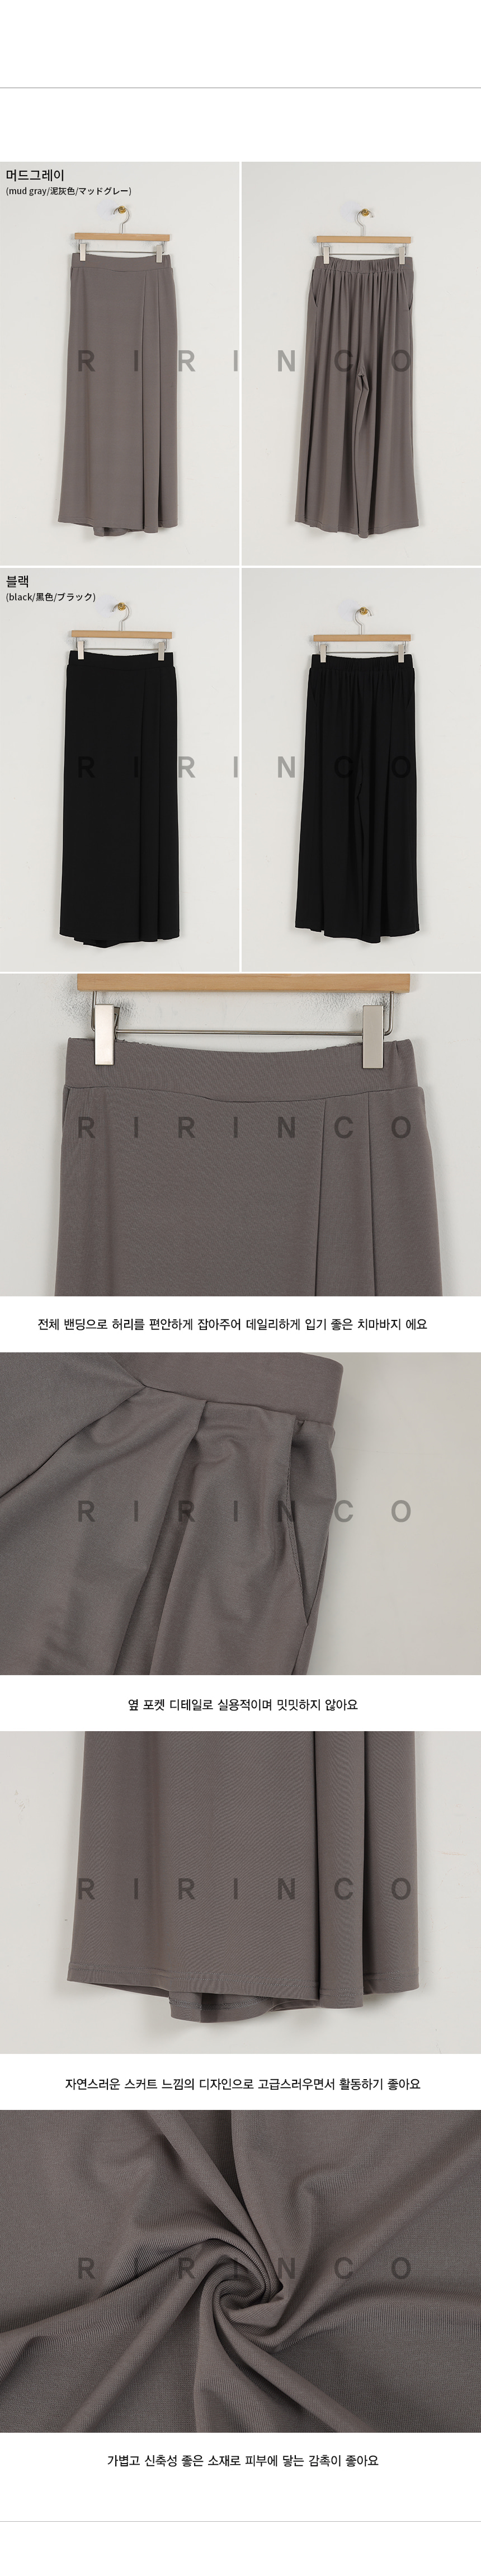 RIRINCO バックゴムスカート風パンツ